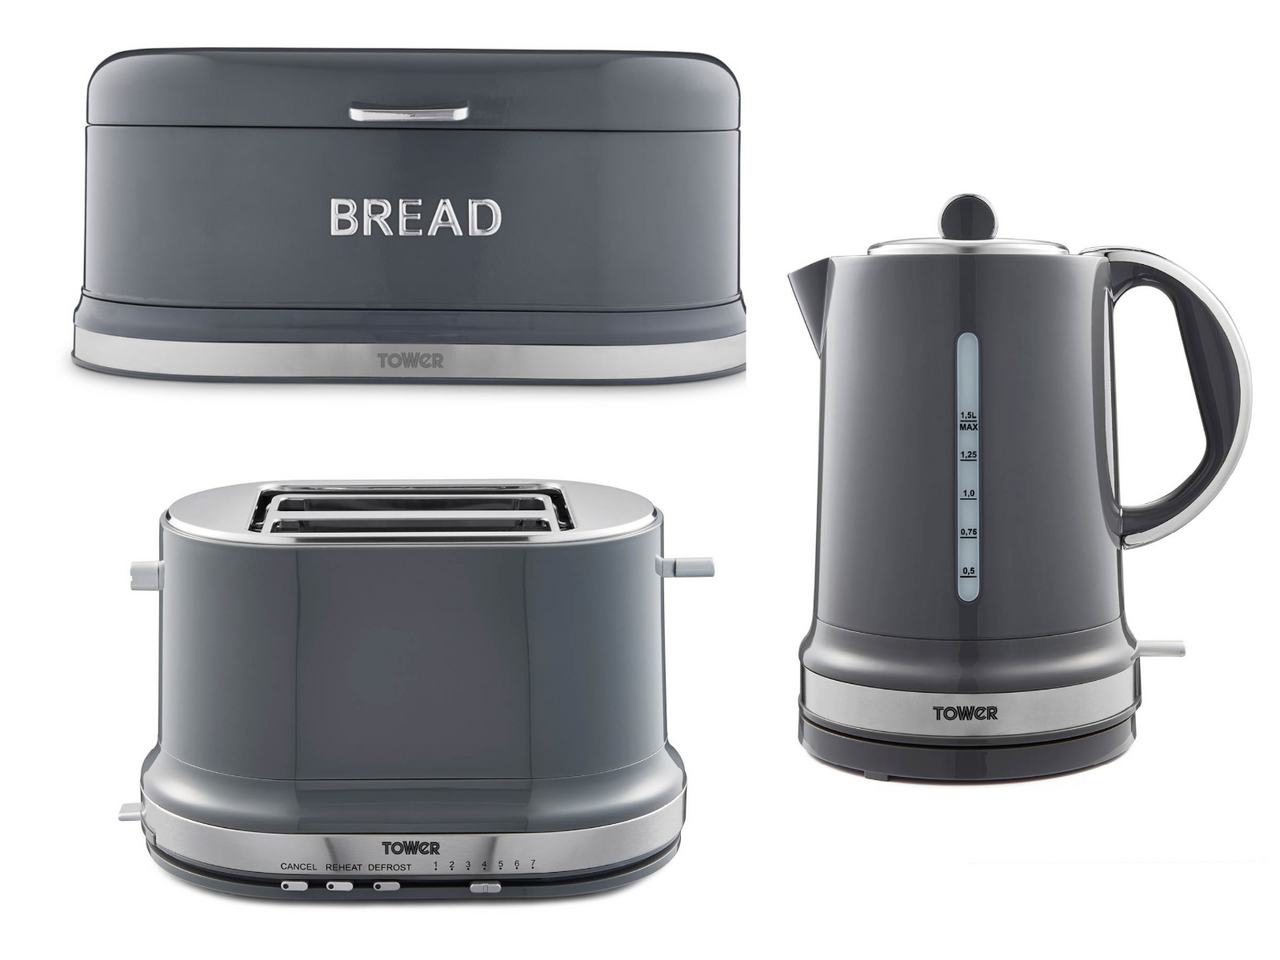 Tower Belle Kettle Toaster & Bread Bin Matching Kitchen Set in Graphite Grey